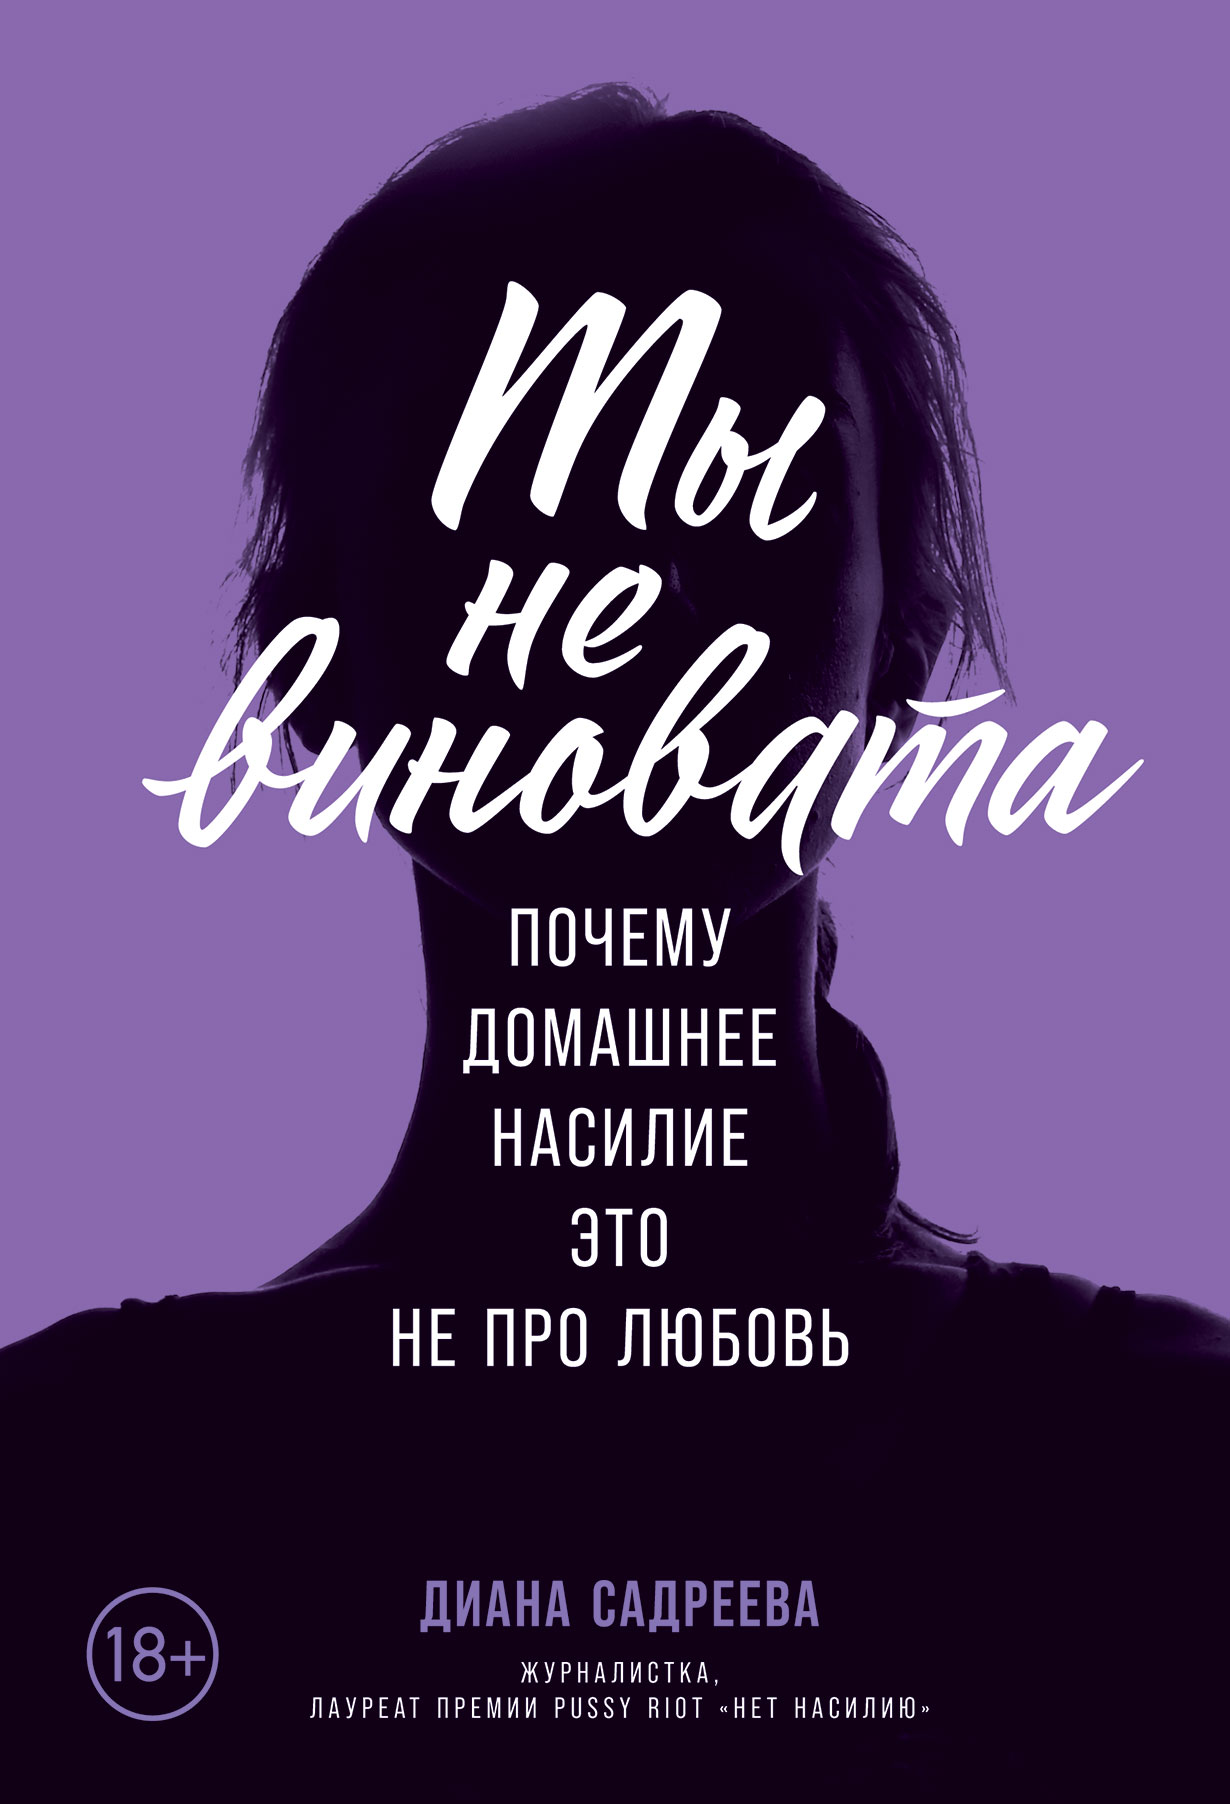 Домашнее насилие женщин над мужчинами / Дискуссионный клуб Полтава